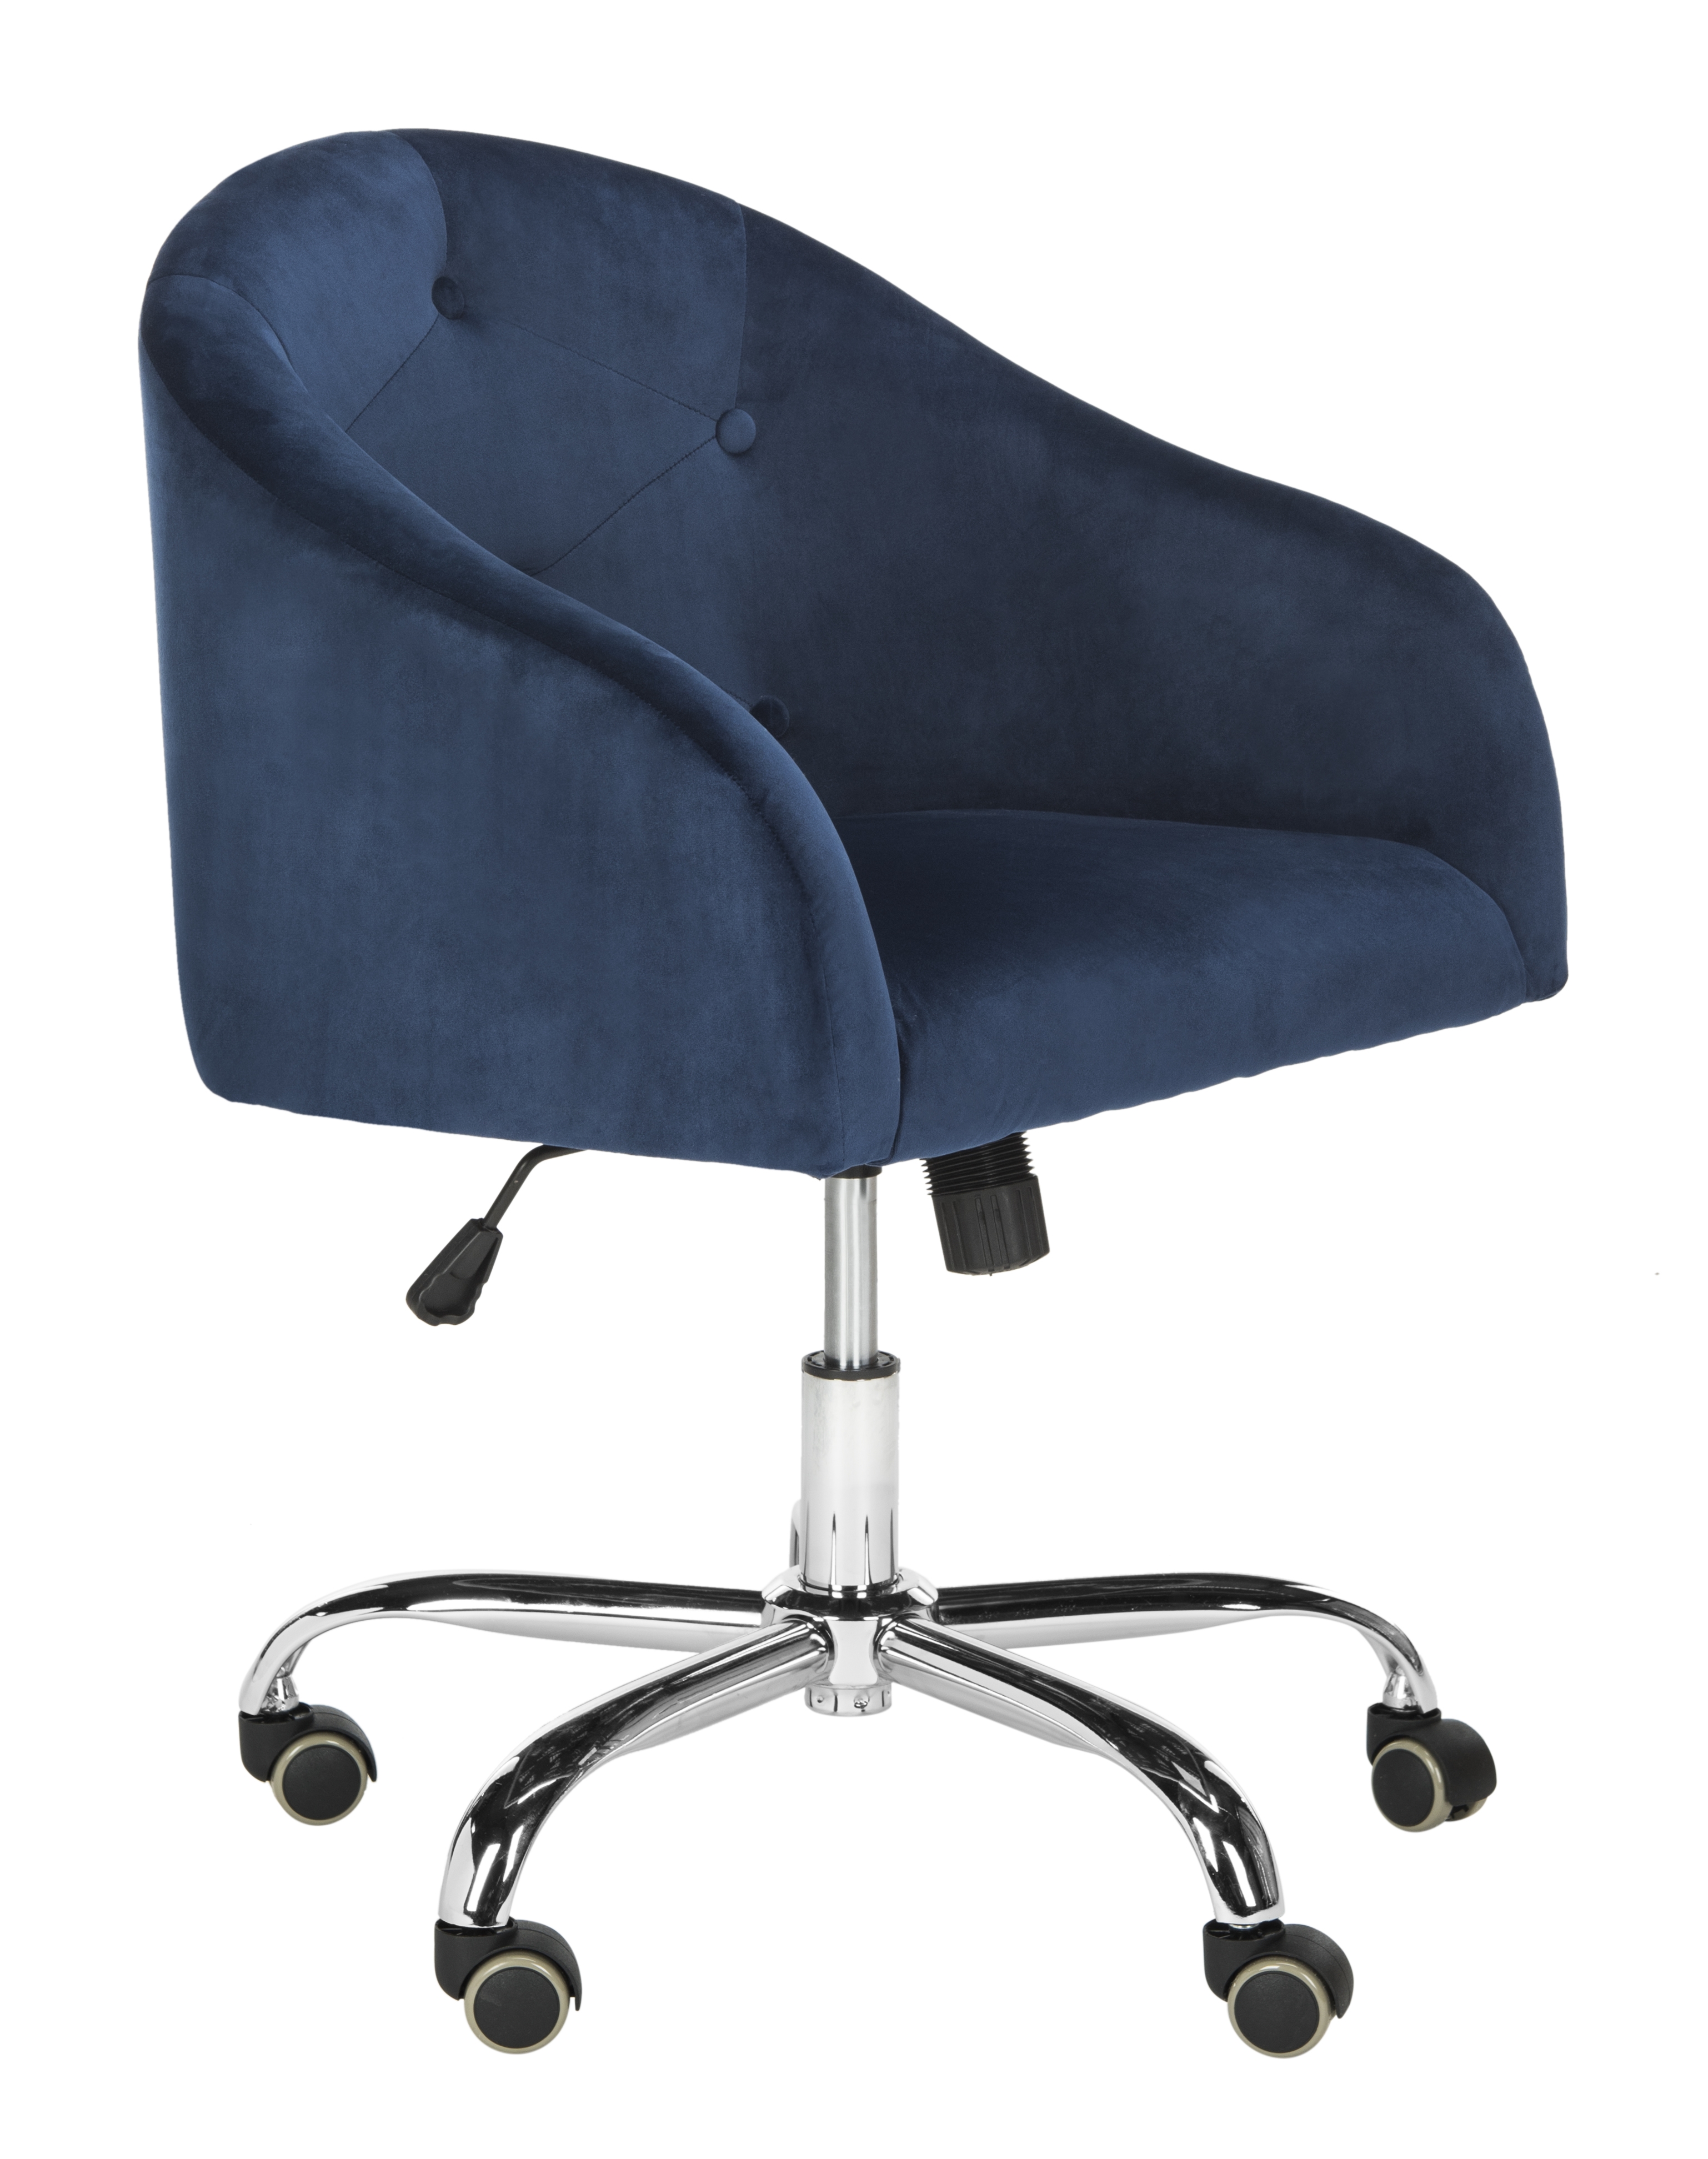 Amy Tufted Velvet Chrome Leg Swivel Office Chair - Navy/Chrome - Safavieh - Image 1